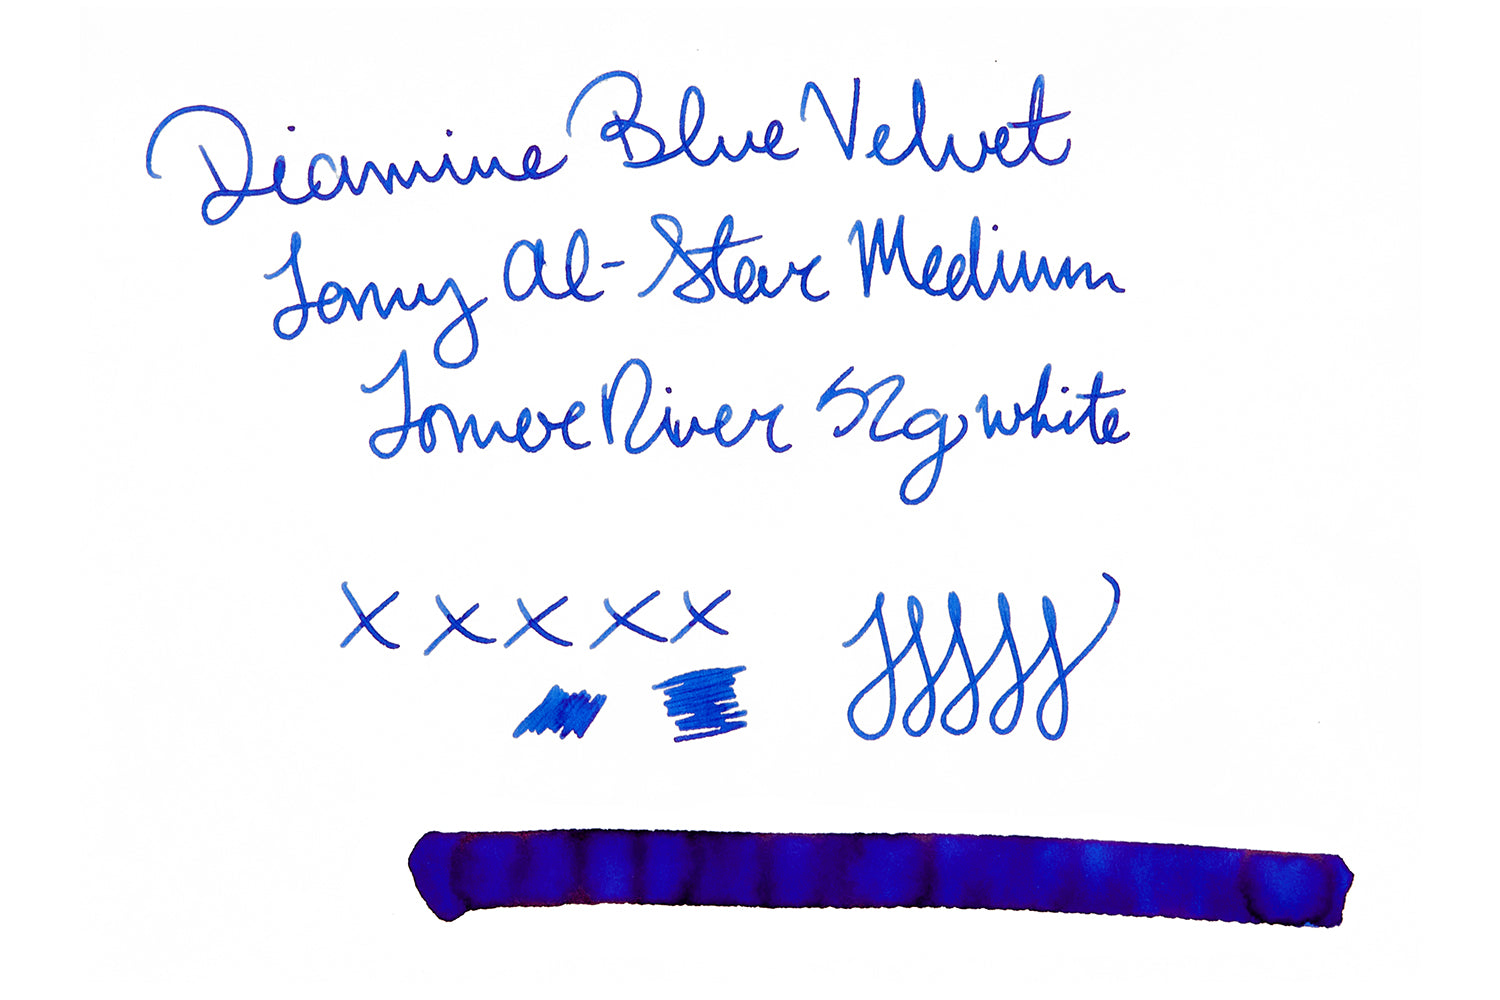 Diamine Blue Velvet Fountain Pen ink on white blank paper